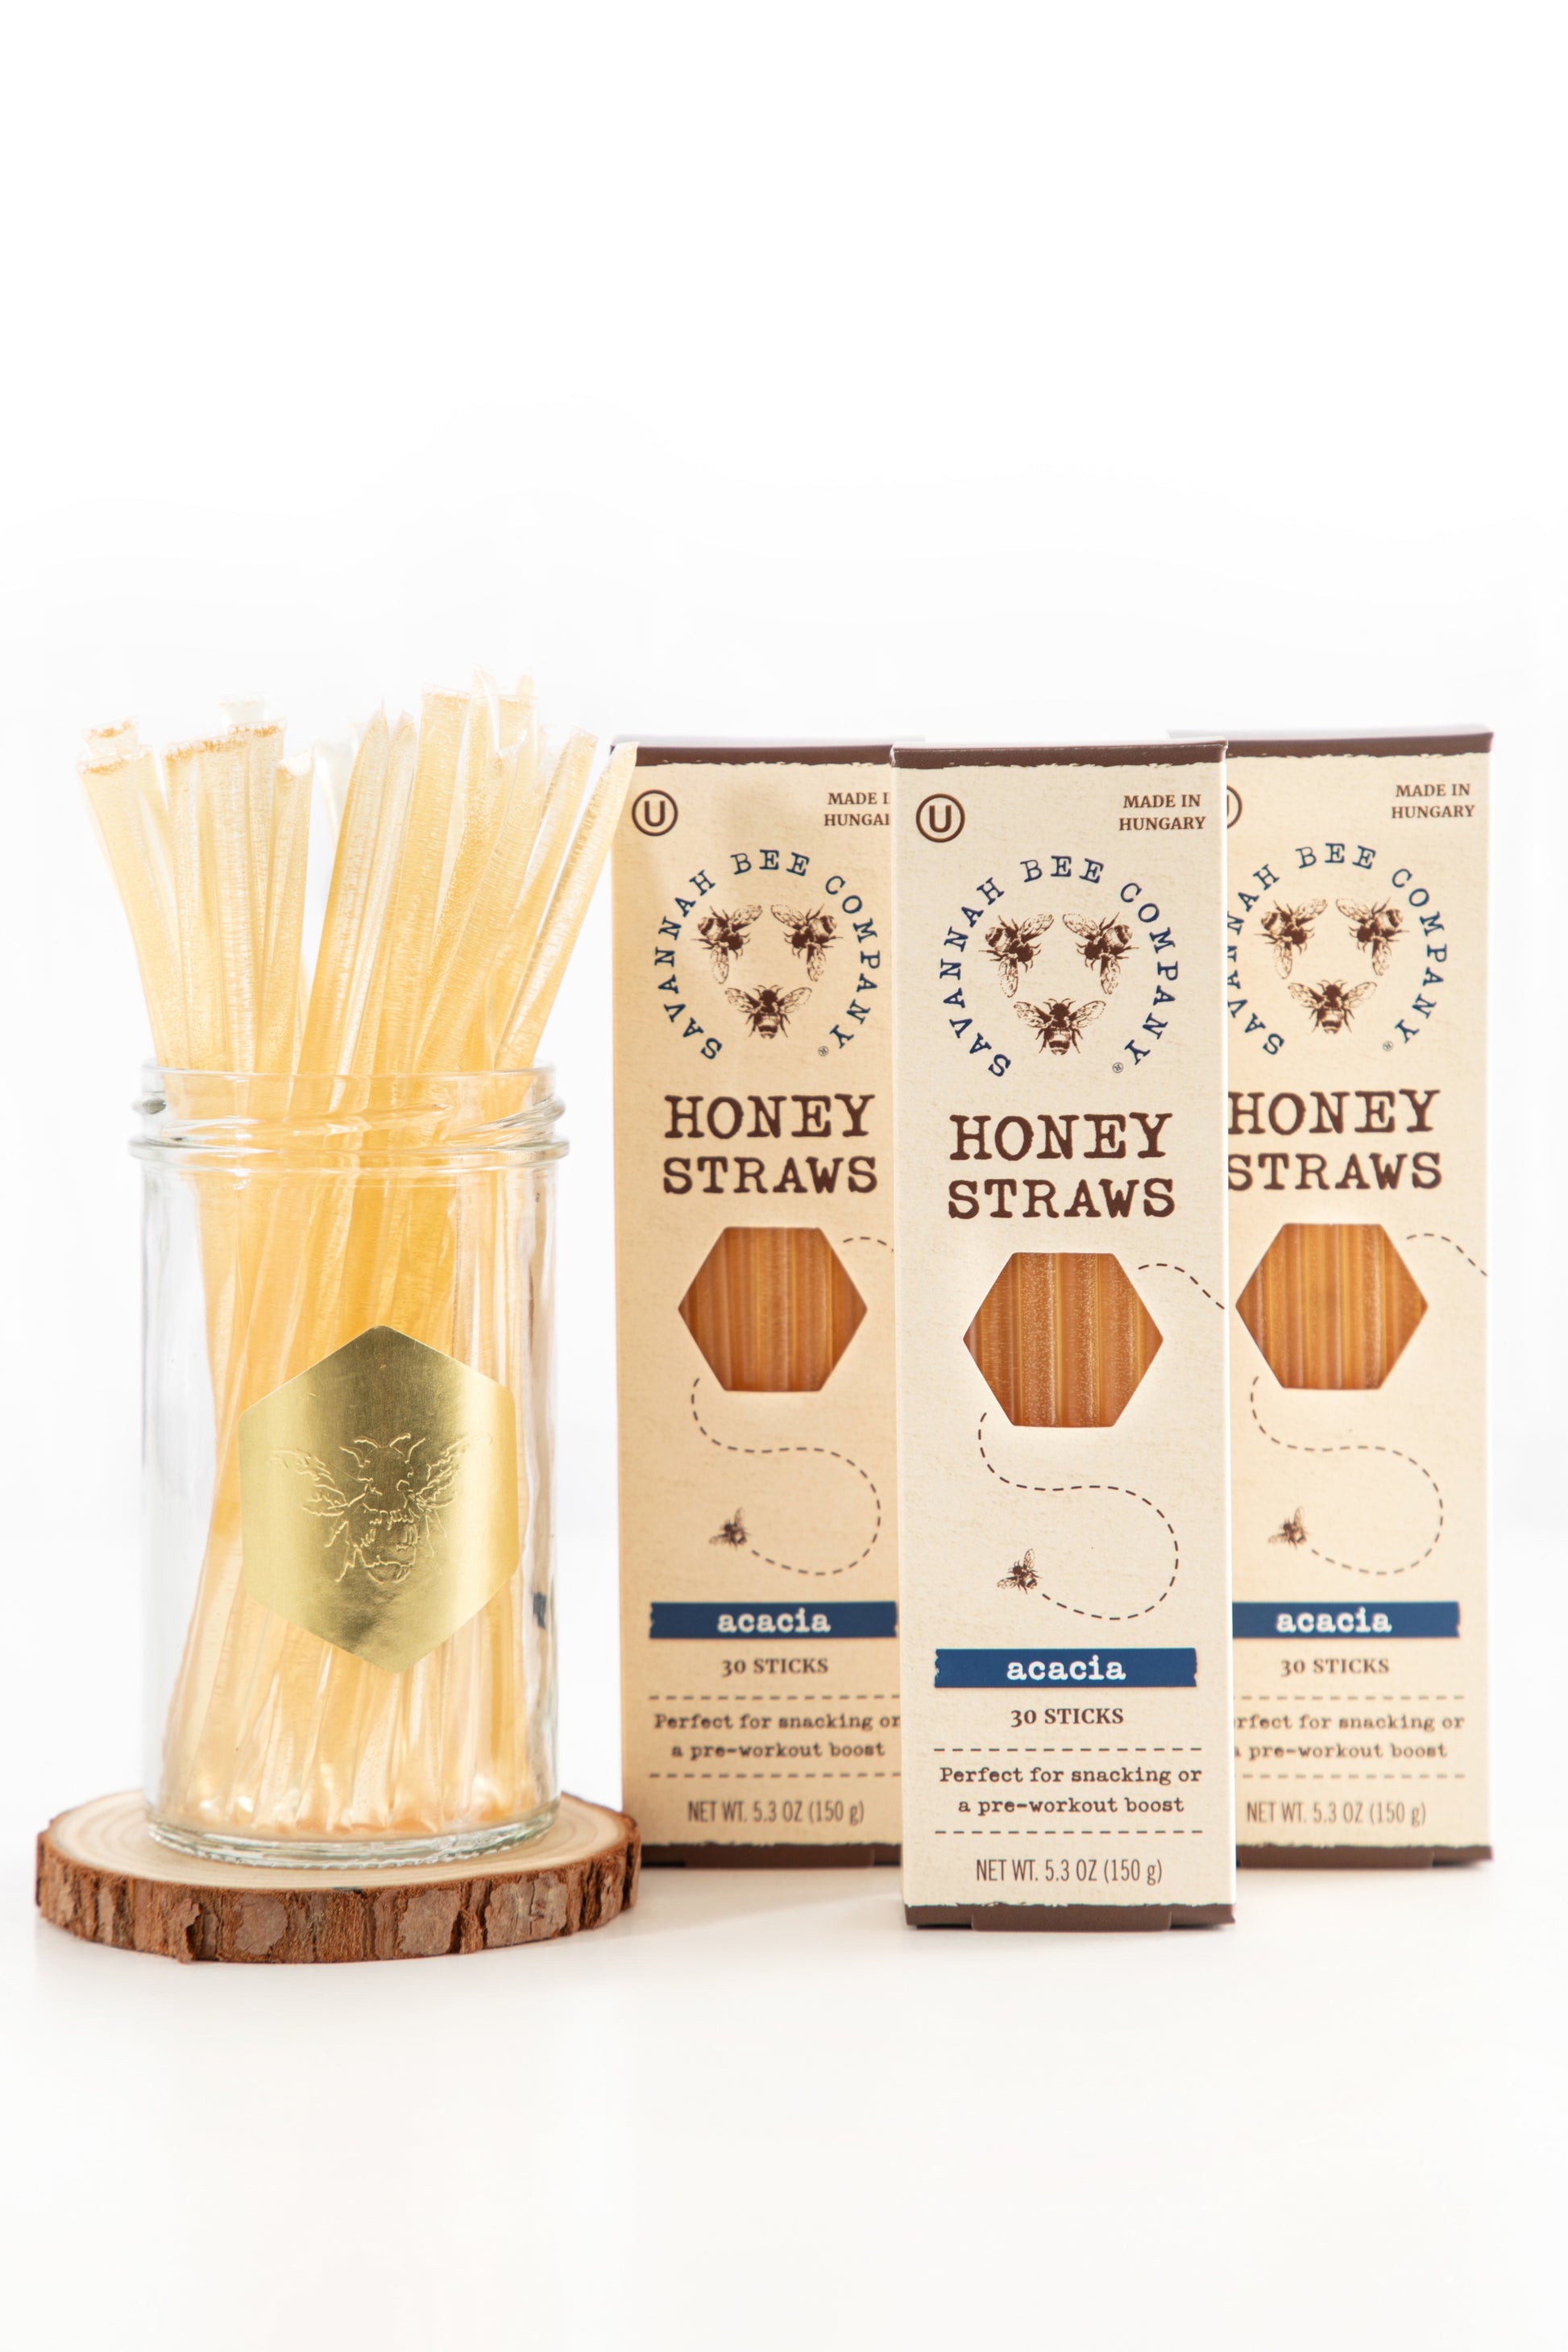 Savannah Bee Company Honey Straws 50 Pack